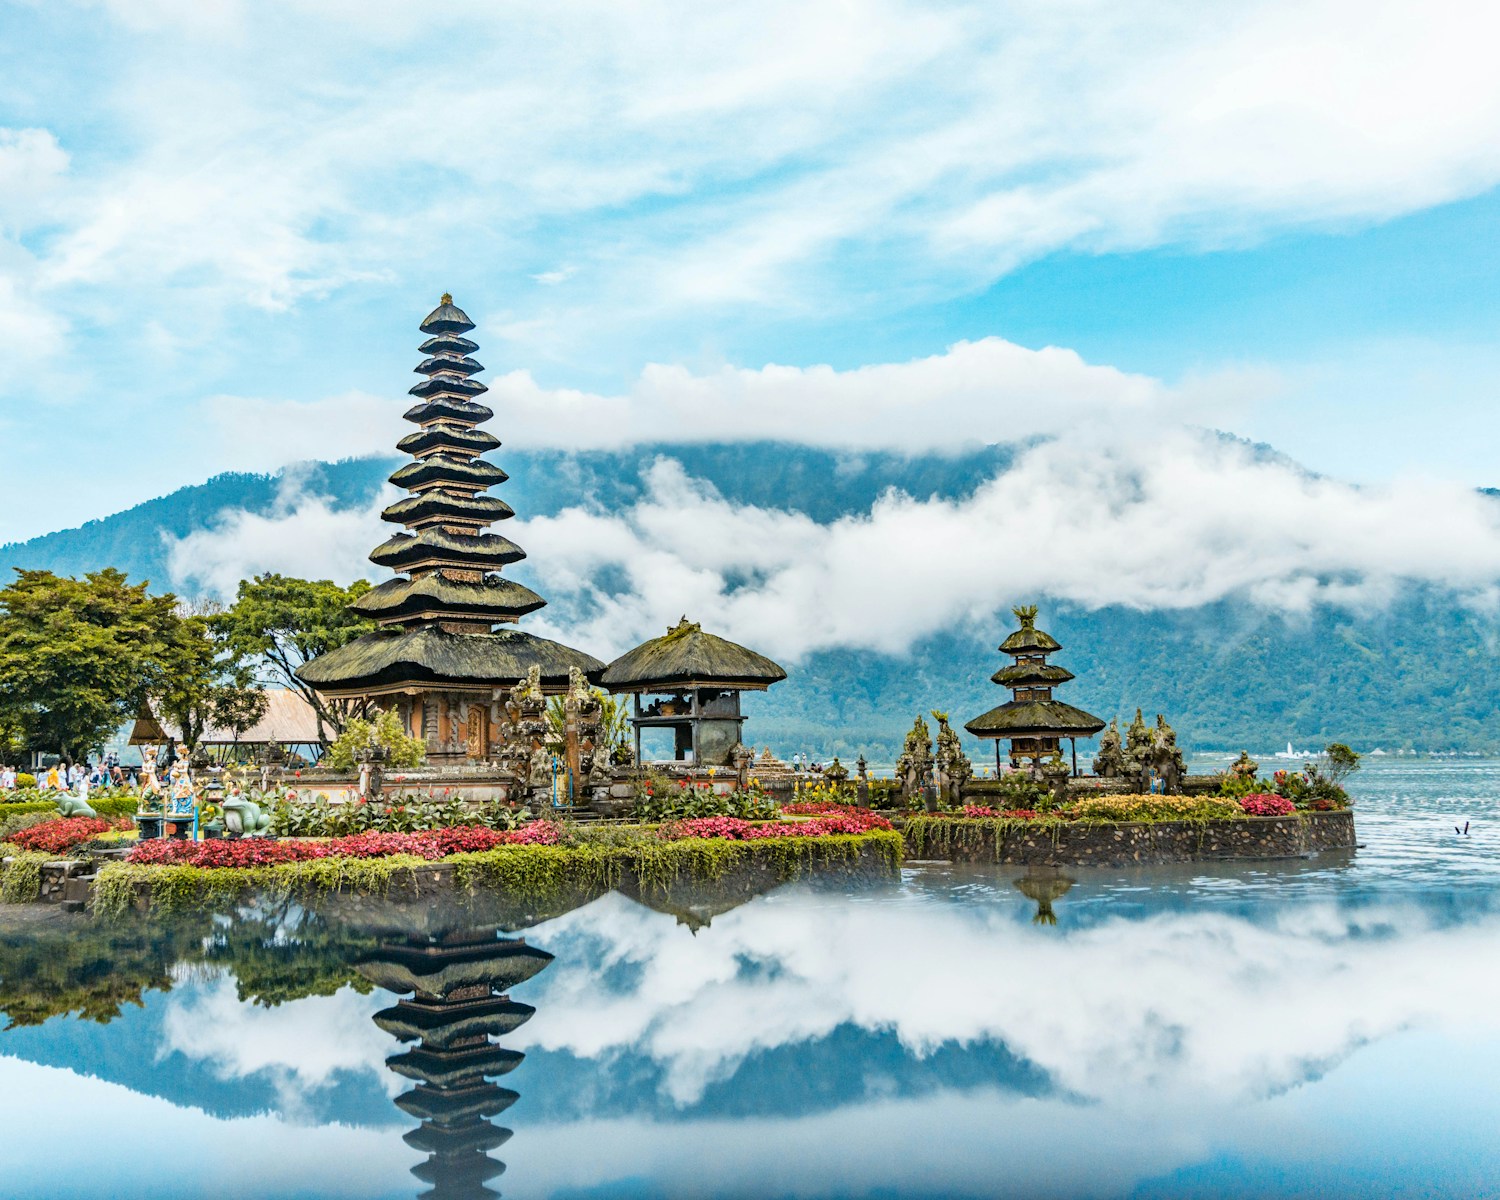 Retraite spirituelle Bali : la destination idéale pour un voyage de développement personnel